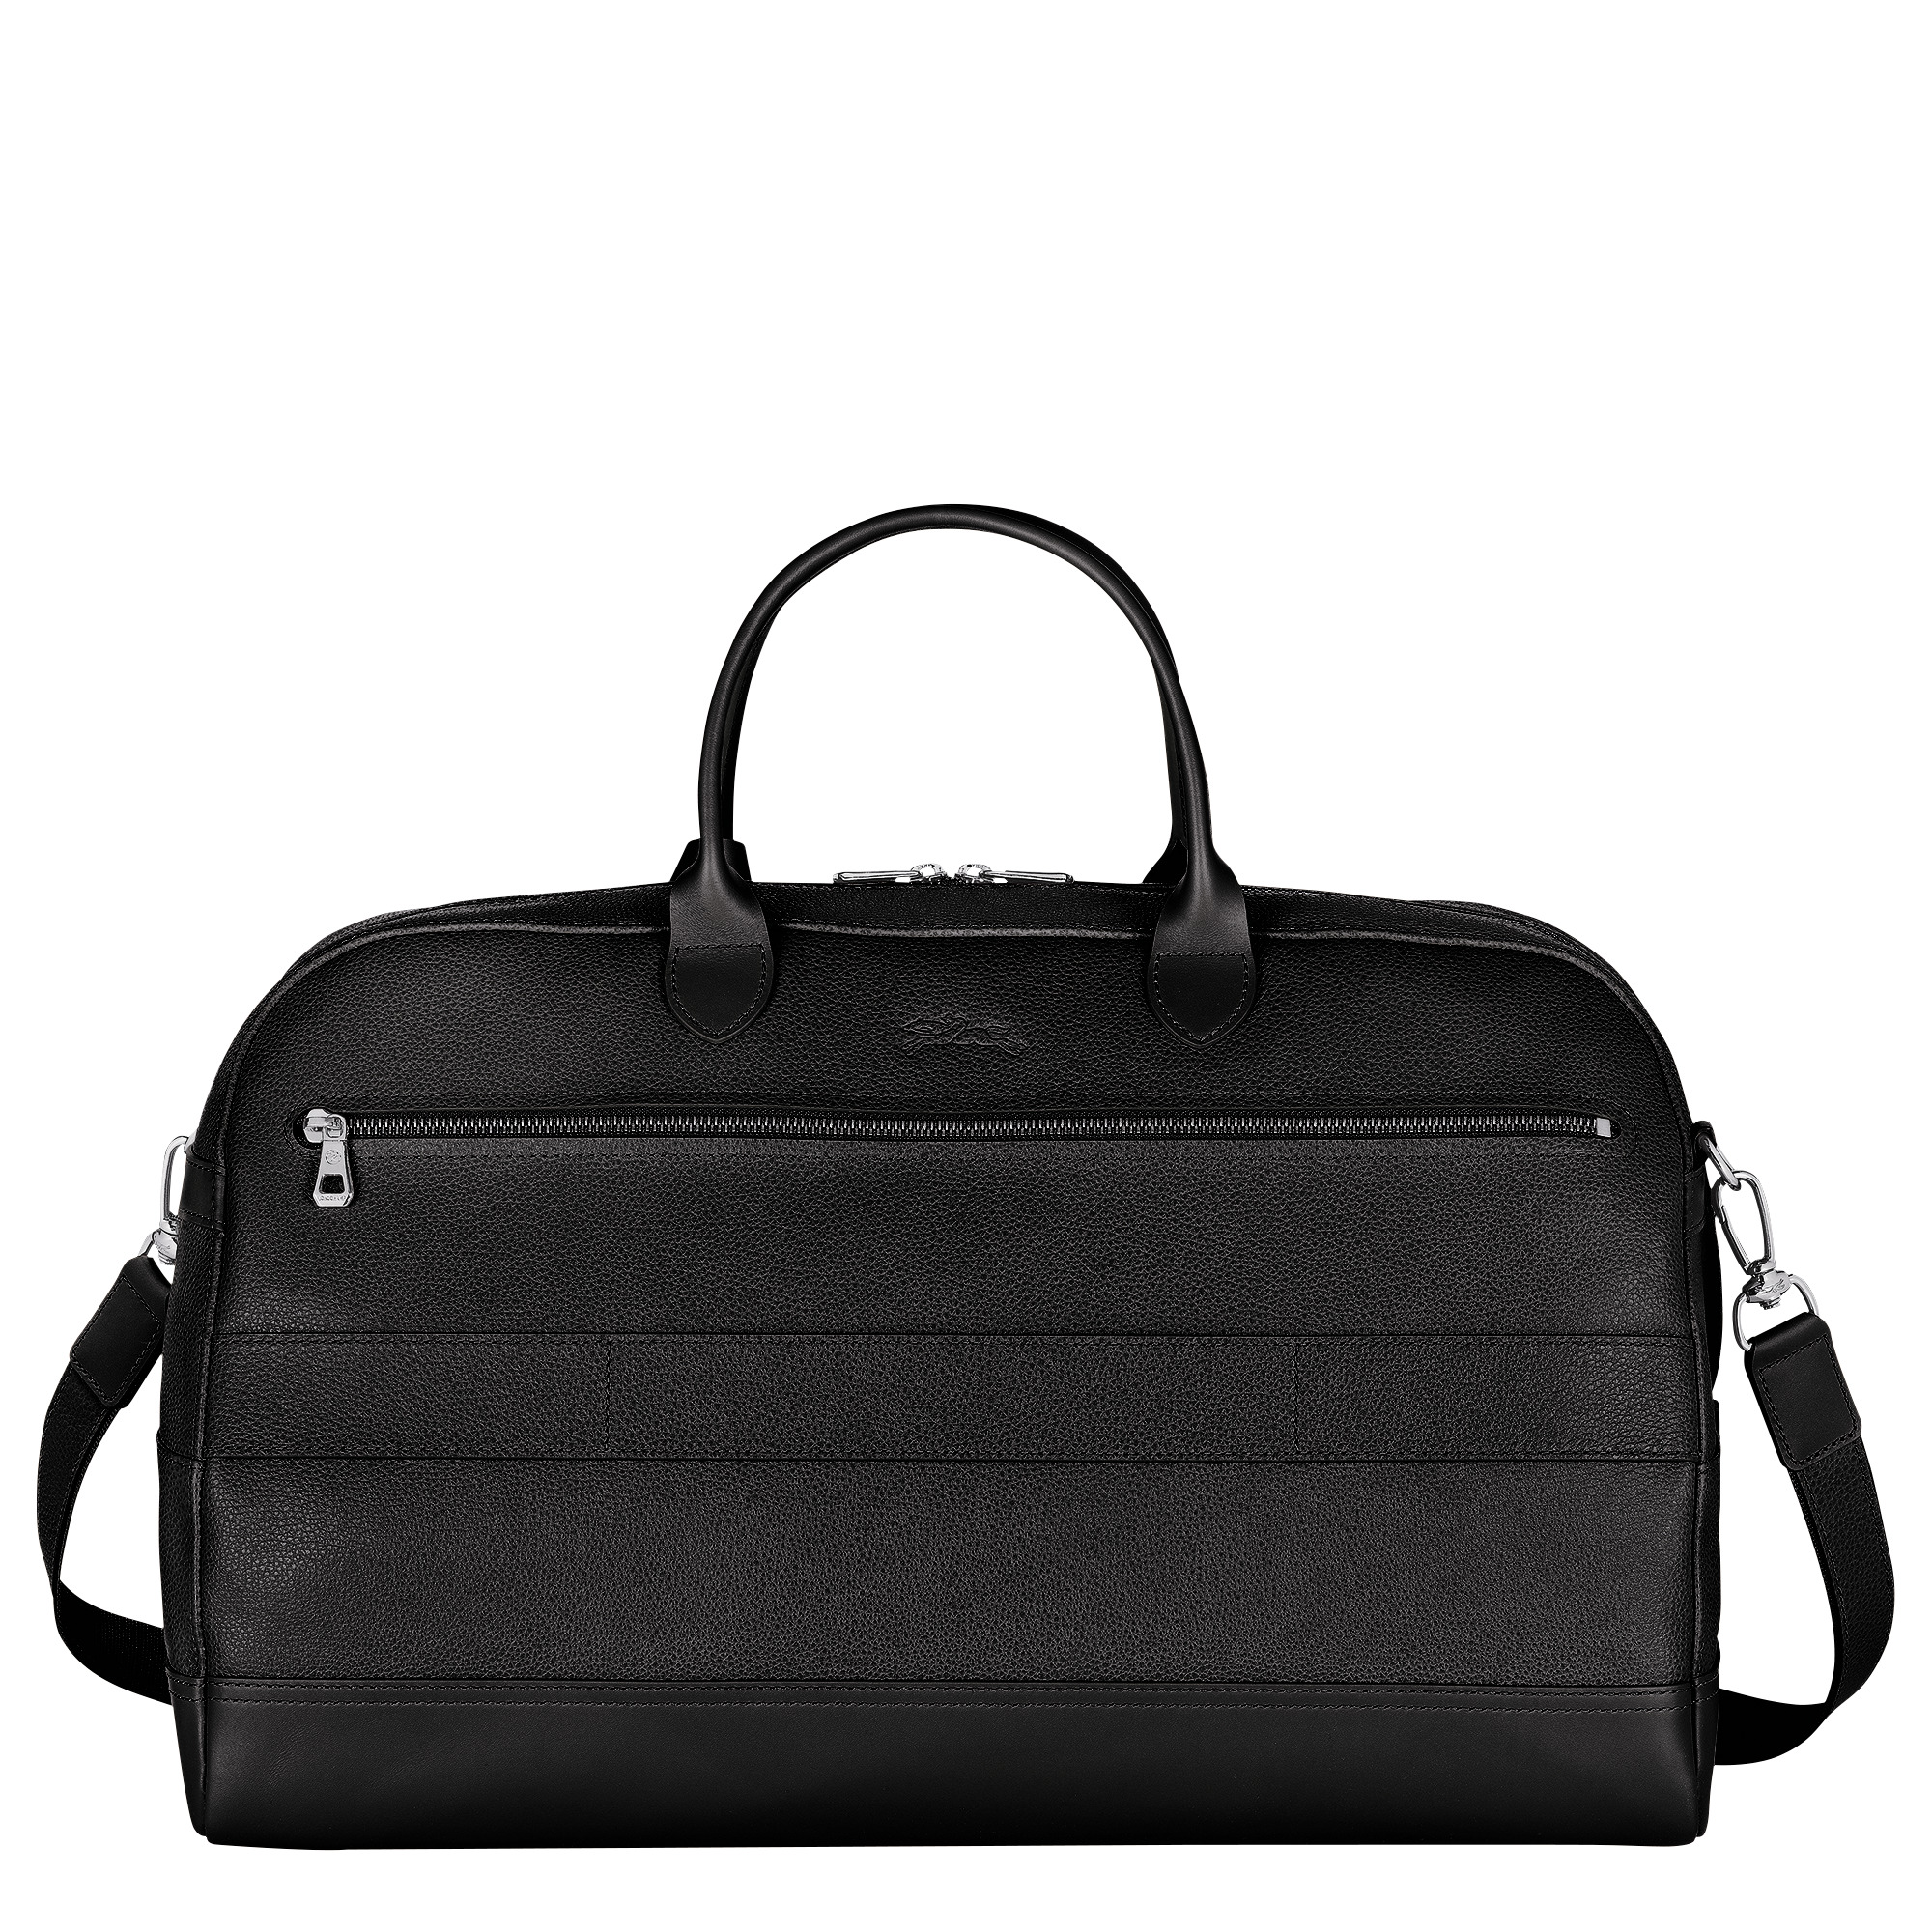 Le Foulonné M Travel bag Black - Leather - 4